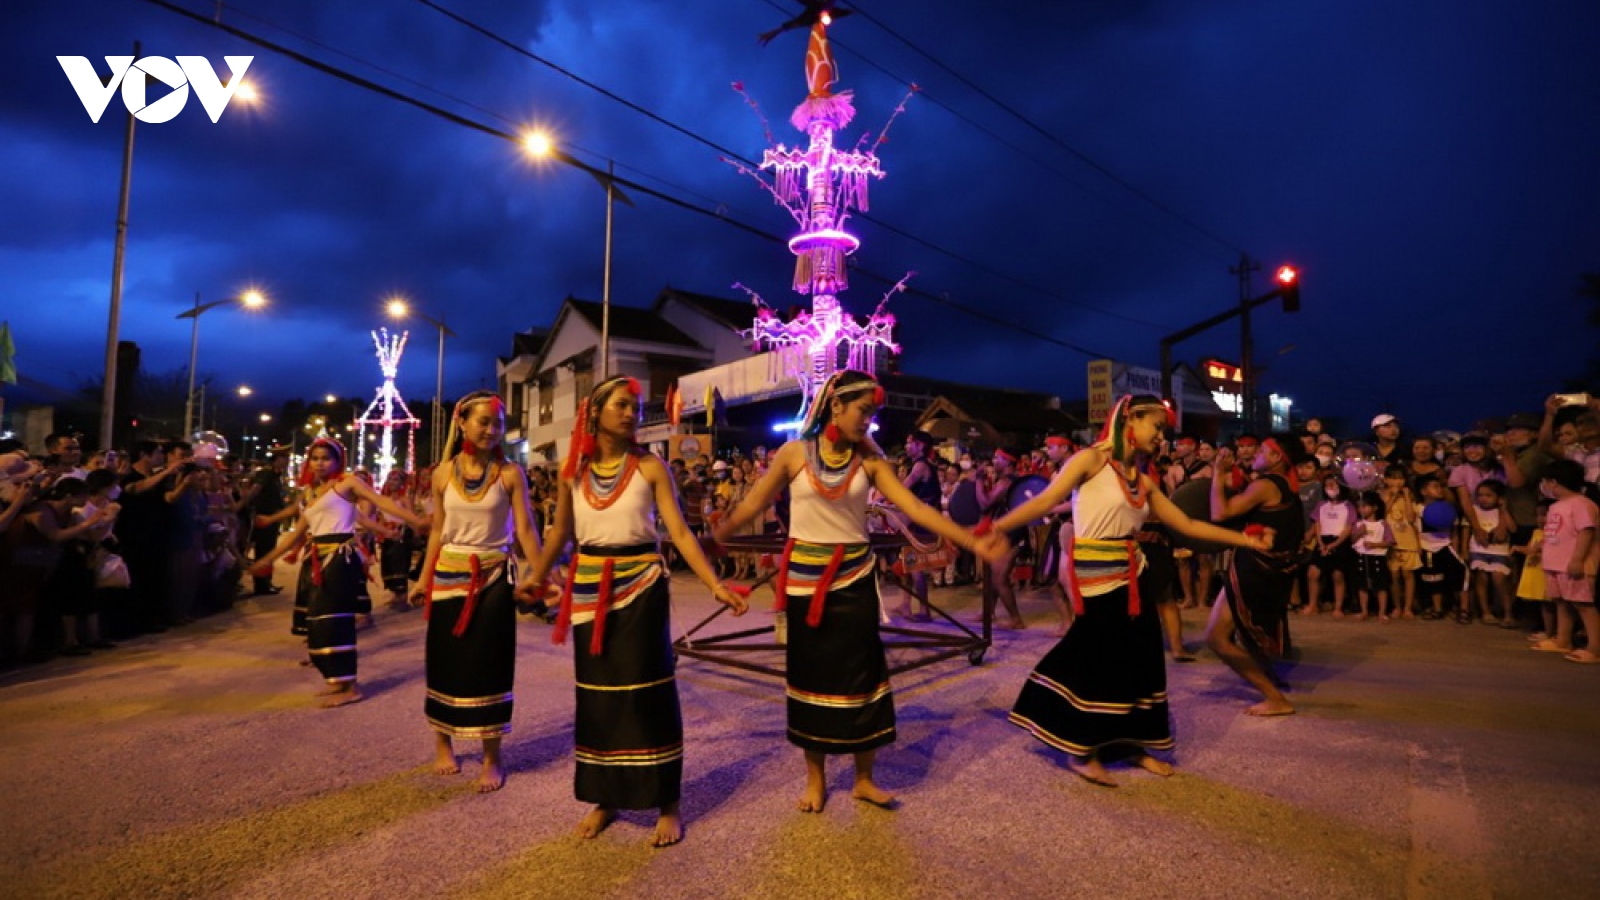 Khai mạc Lễ hội văn hóa các dân tộc chủ đề “Âm vang đại ngàn năm 2022”